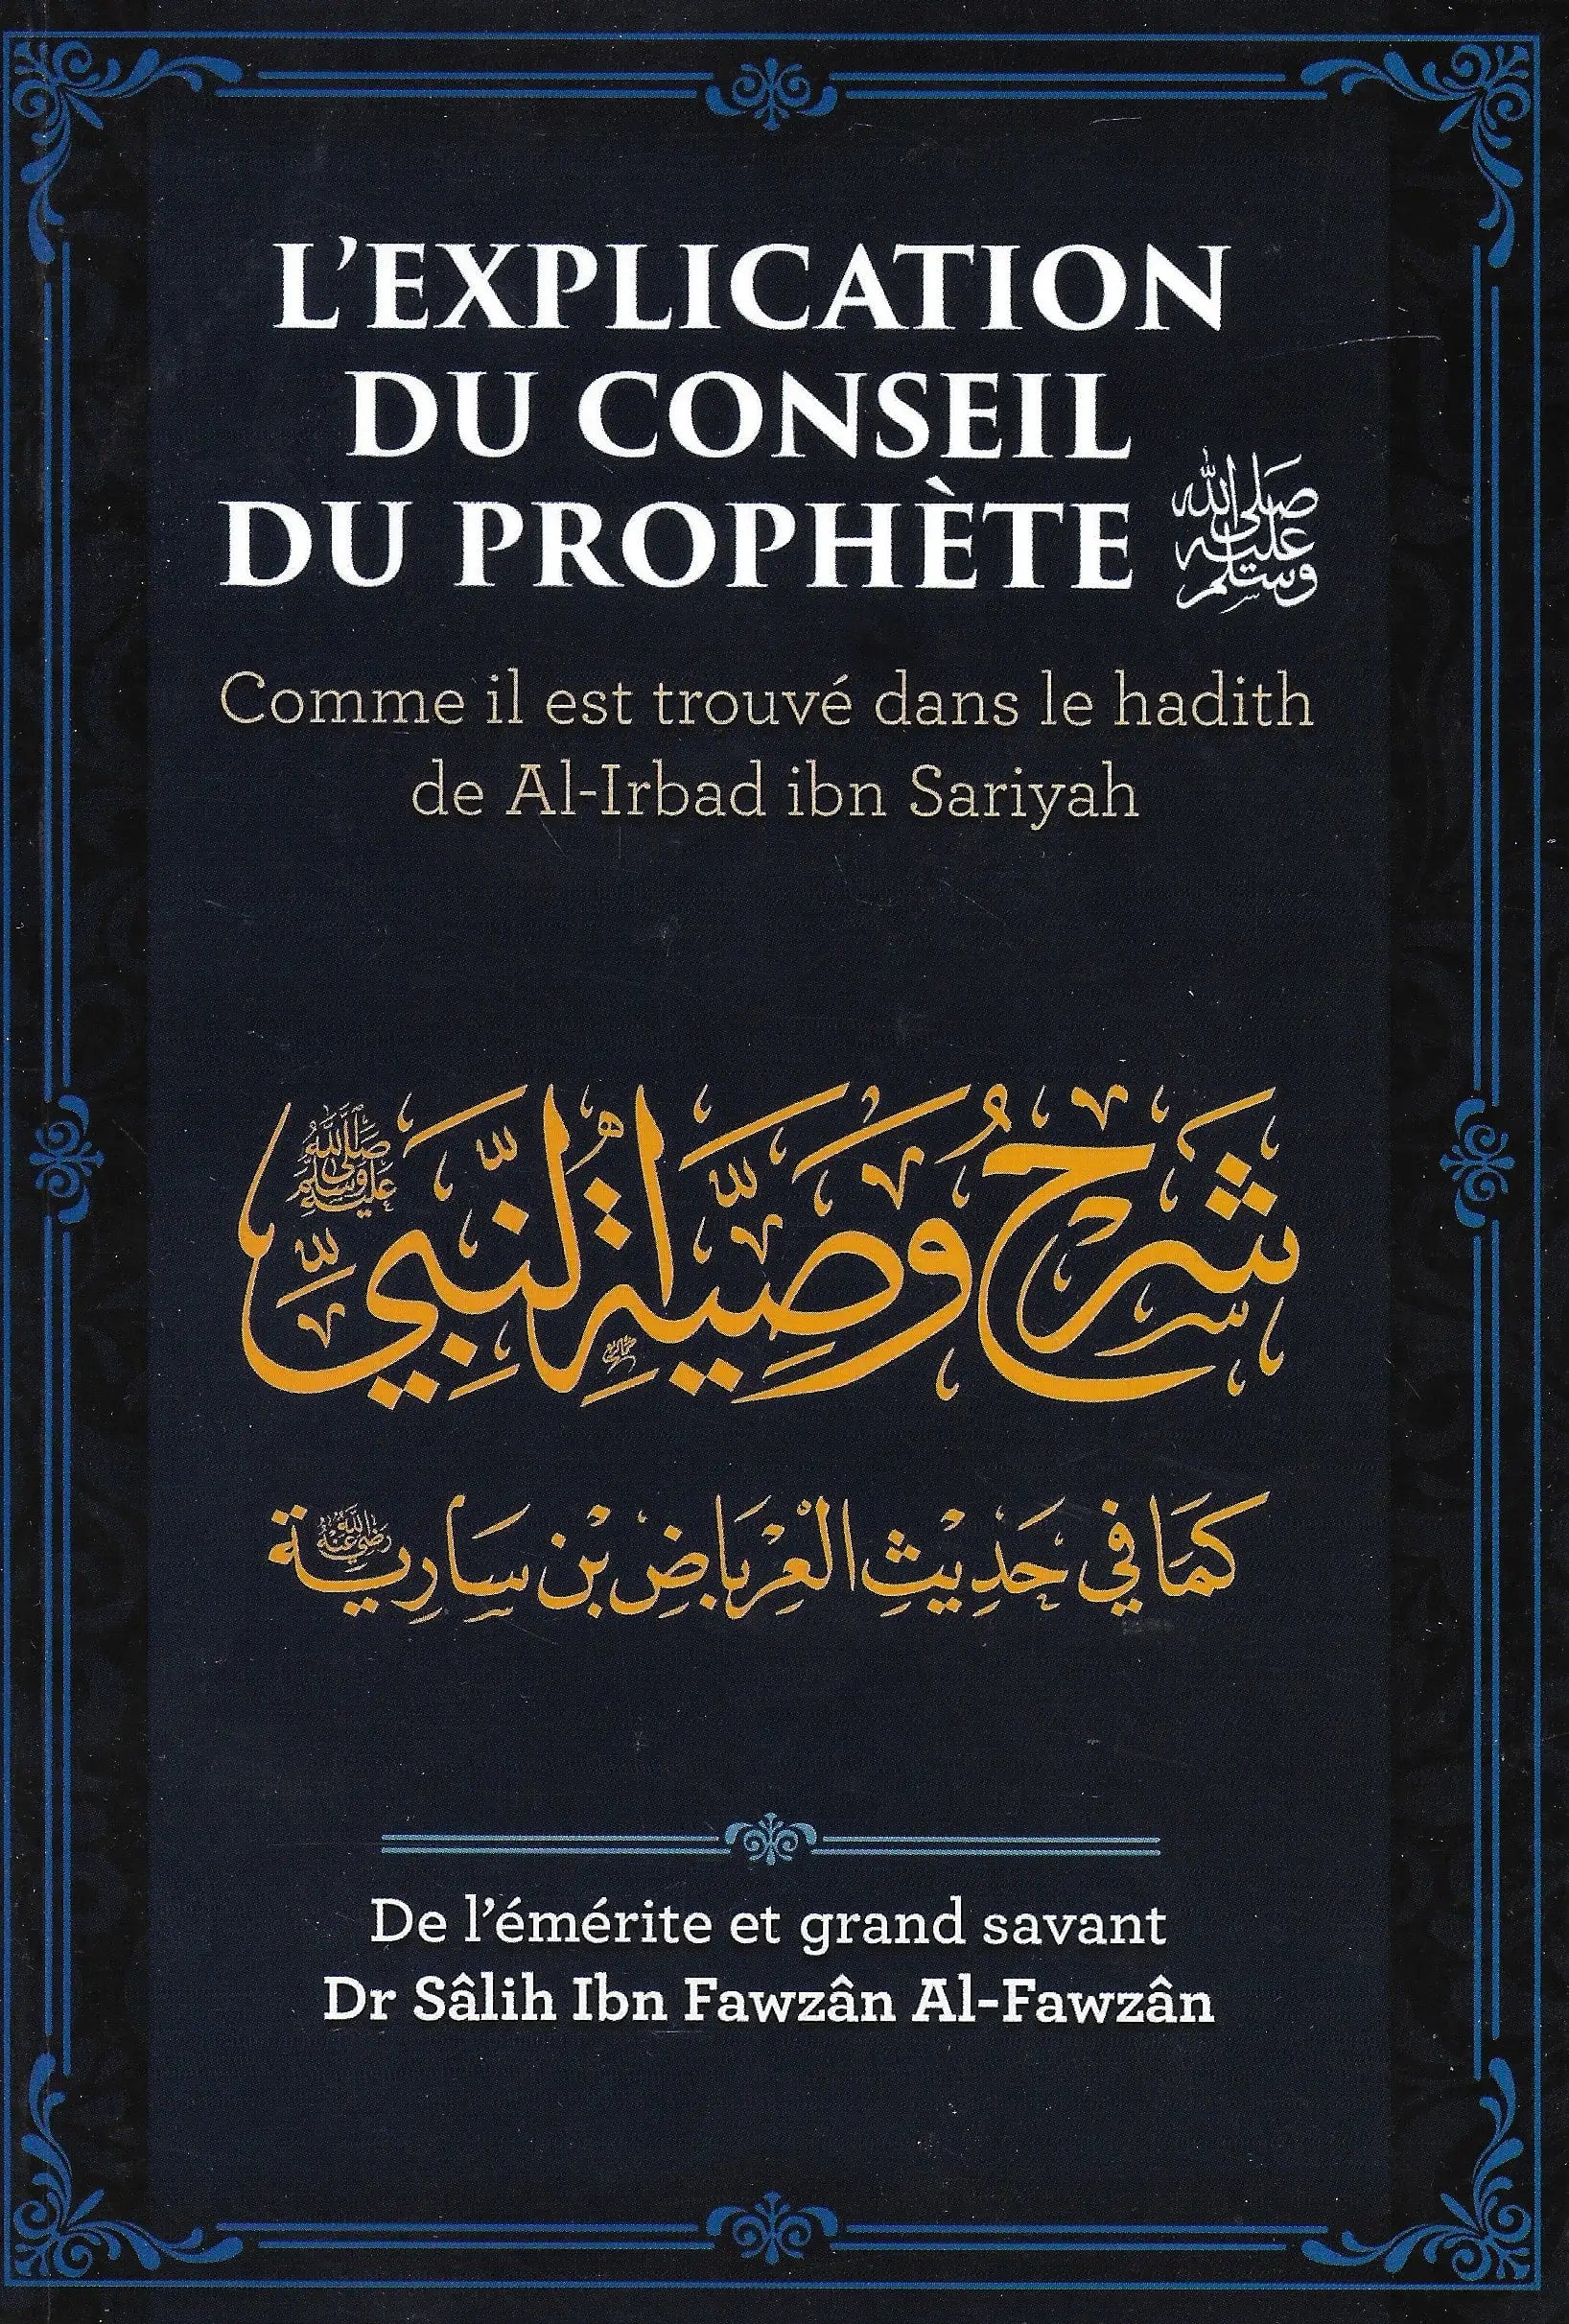 L'explication du conseil du prophète - Comme il est trouvé dans le hadith de Al-Irabad ibn Sariyah - Dr Sâlih Ibn Fawzân Al-Fawzân - Ibn Badis